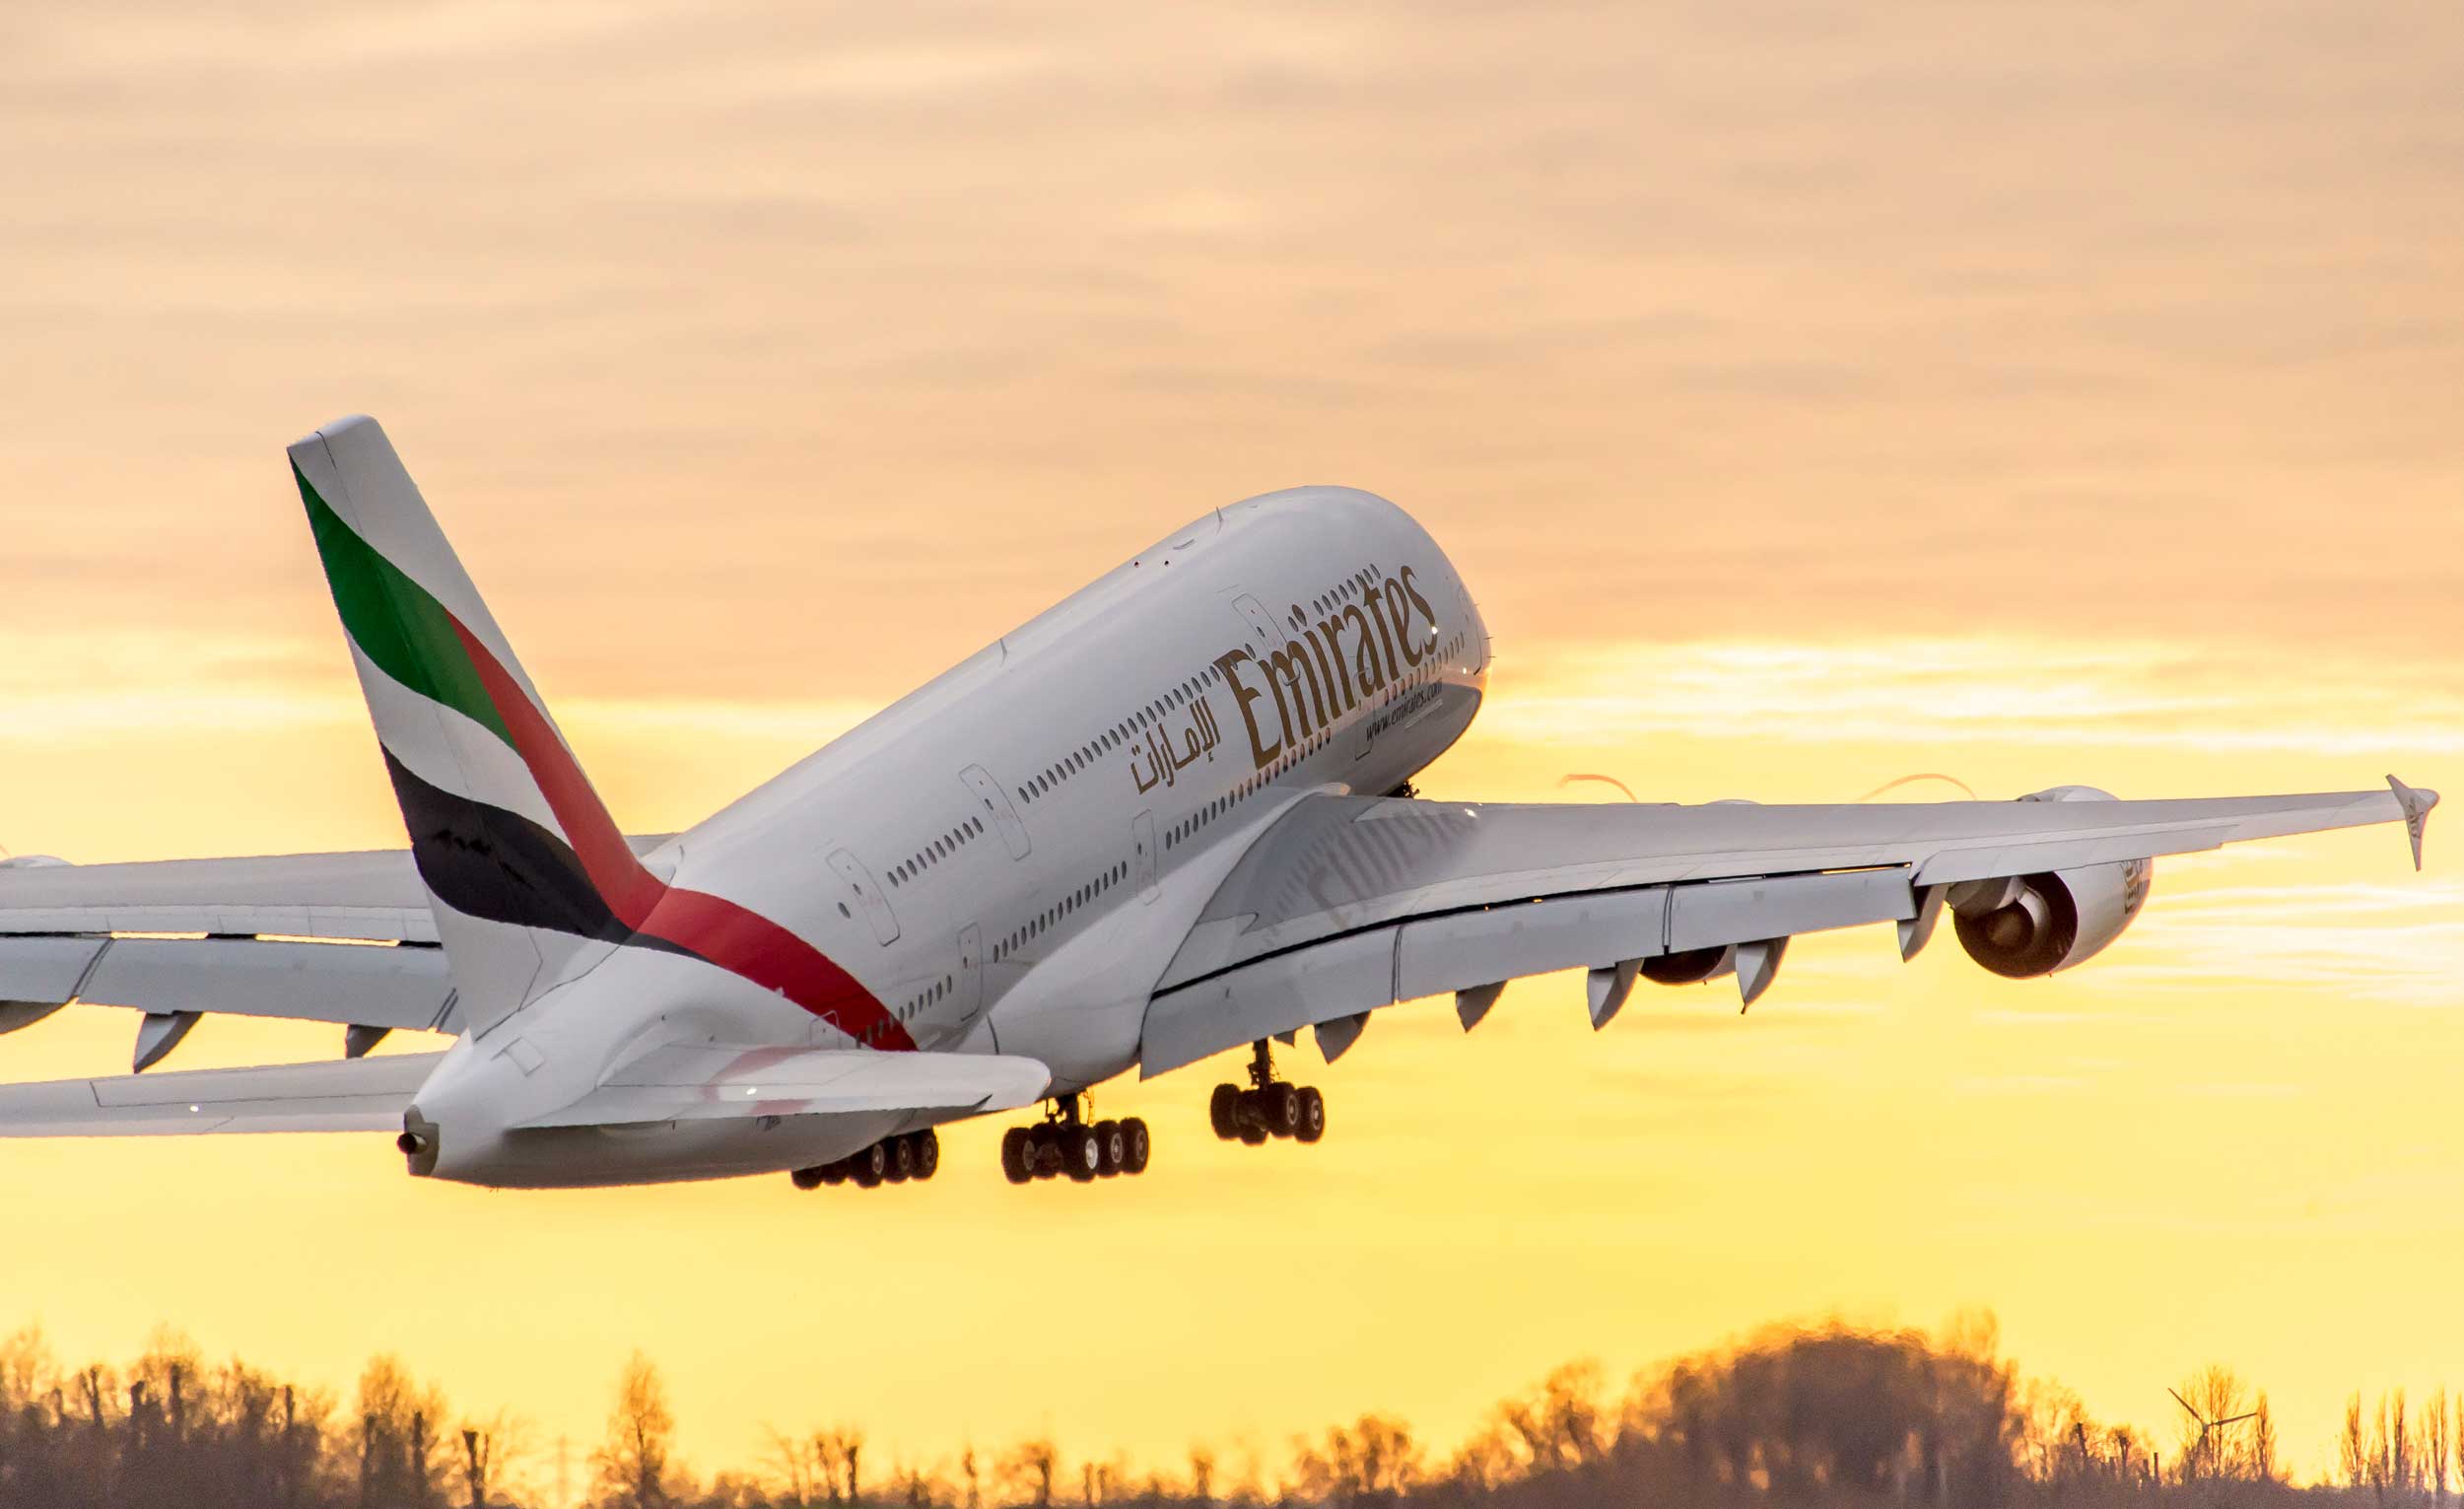 Самый большой пассажирский самолет а380 снимают с производства. разве с ним что-то не так?